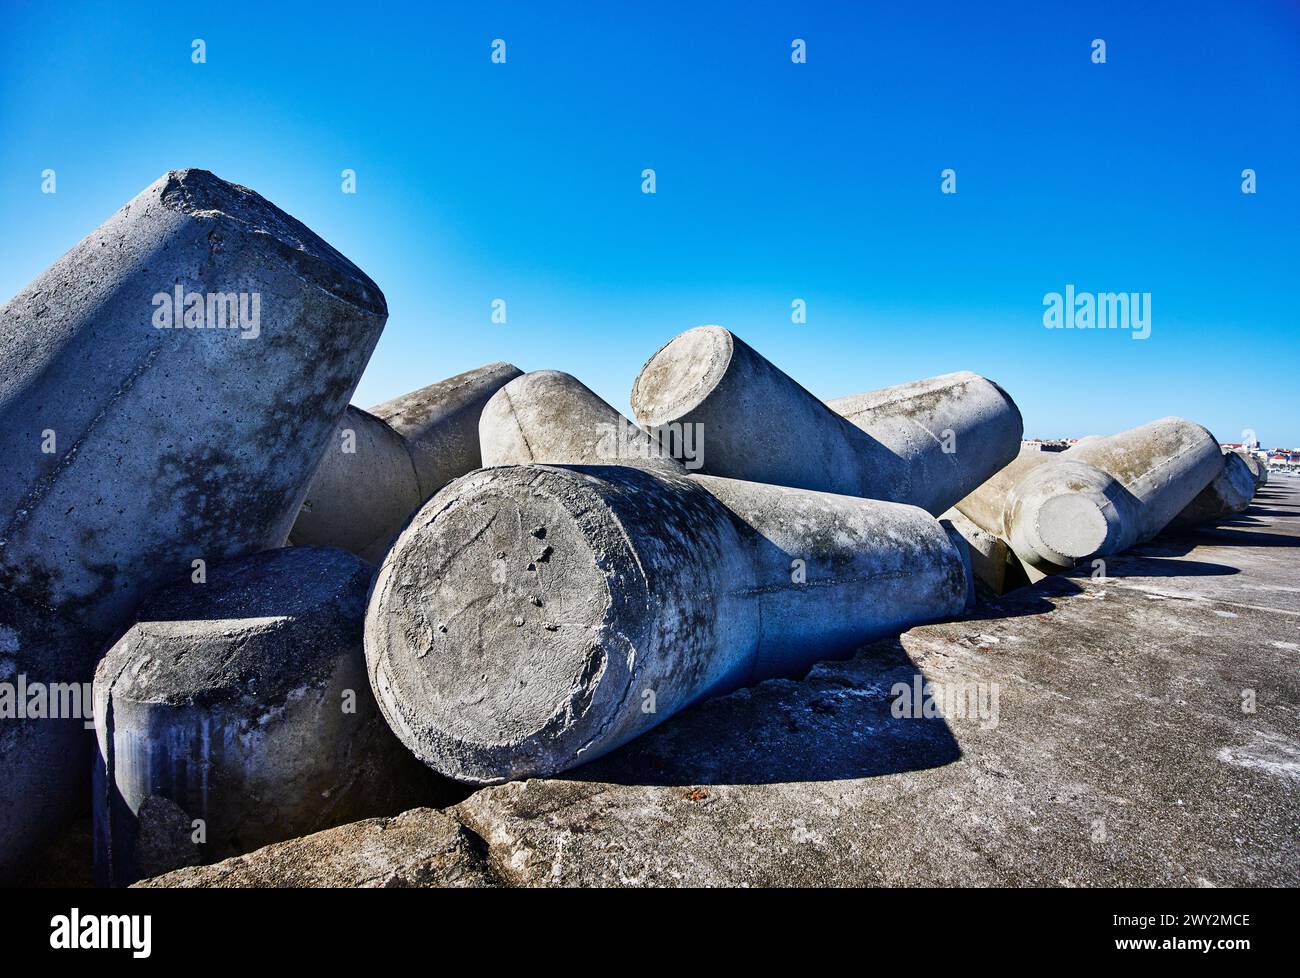 Concrete tetrapod wave breakers in Penche, Portugal, Europe Stock Photo